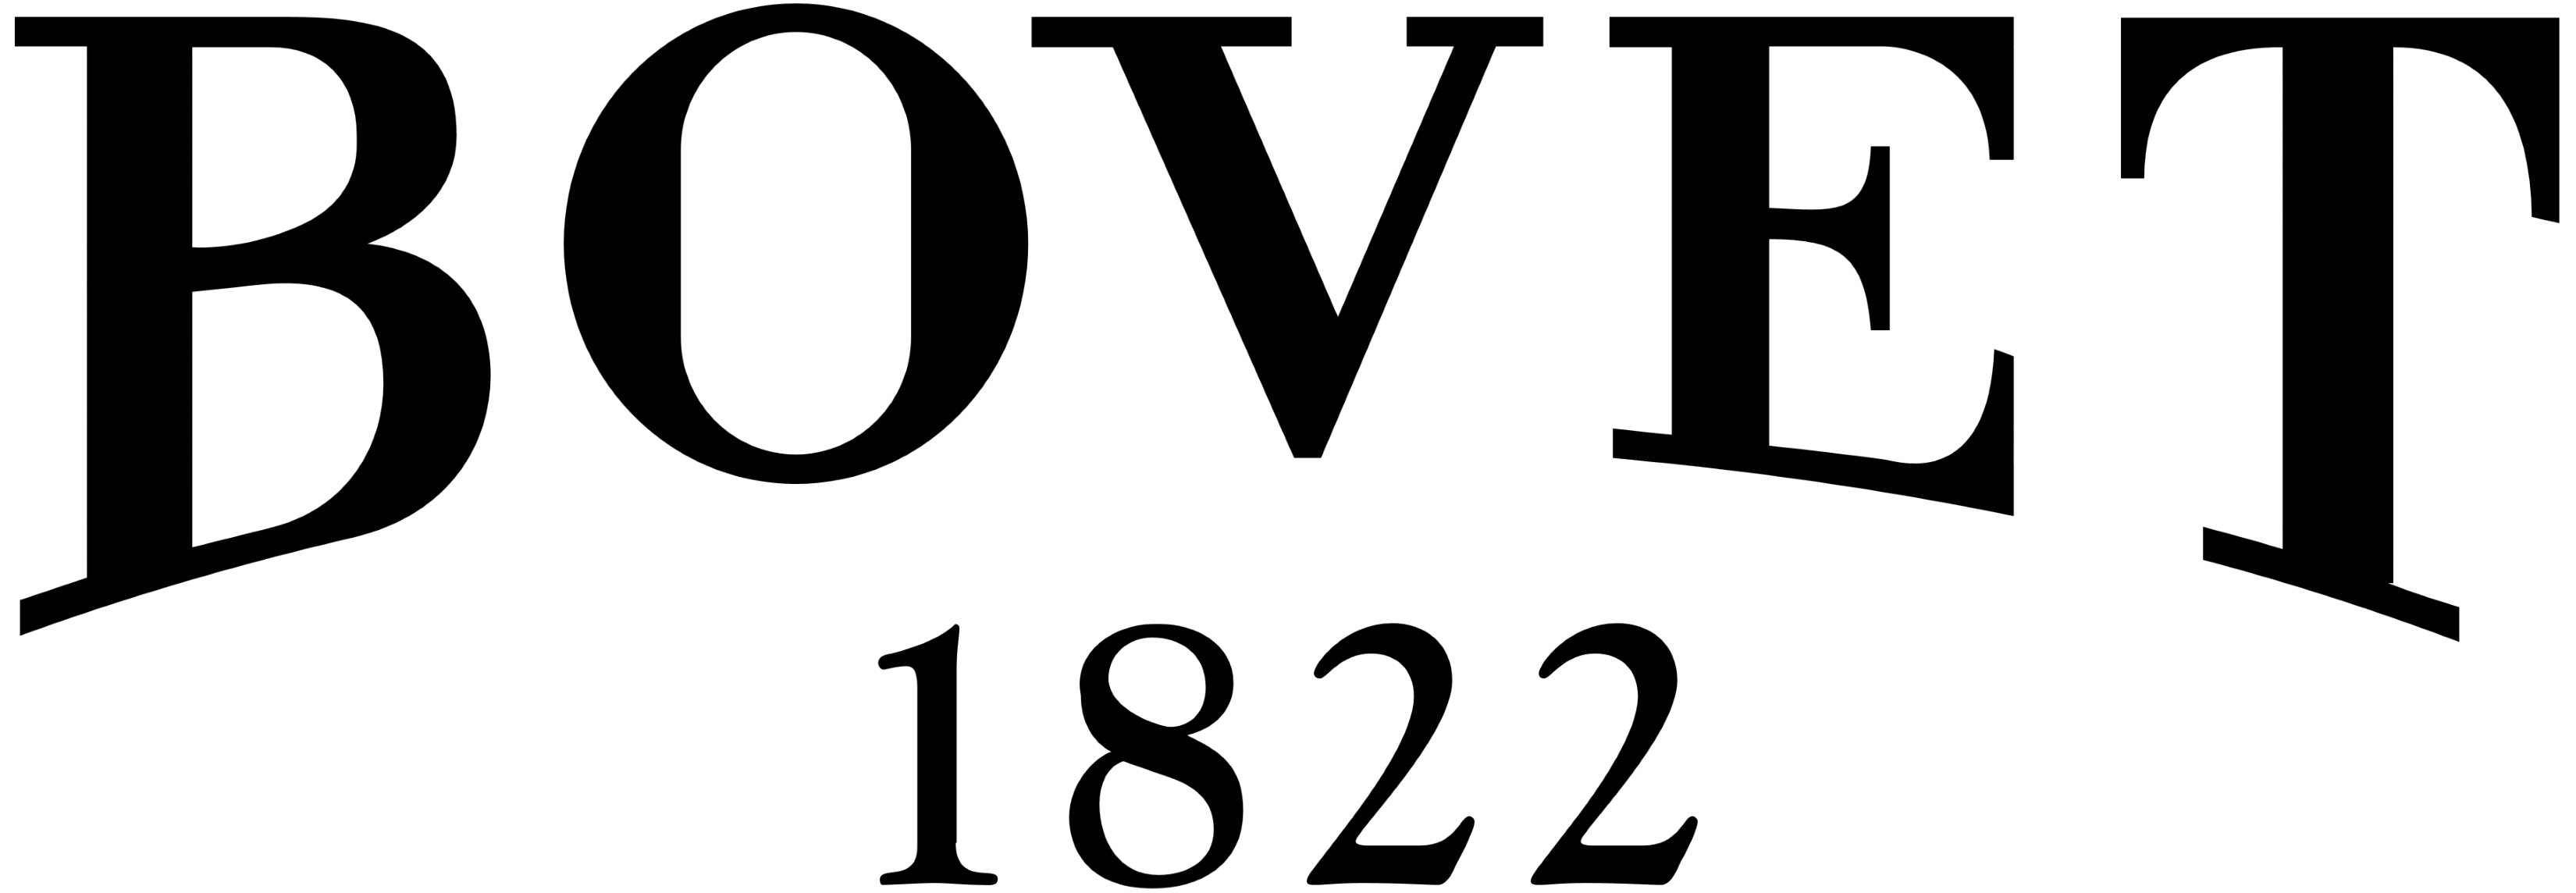 Bovet logo, logotype